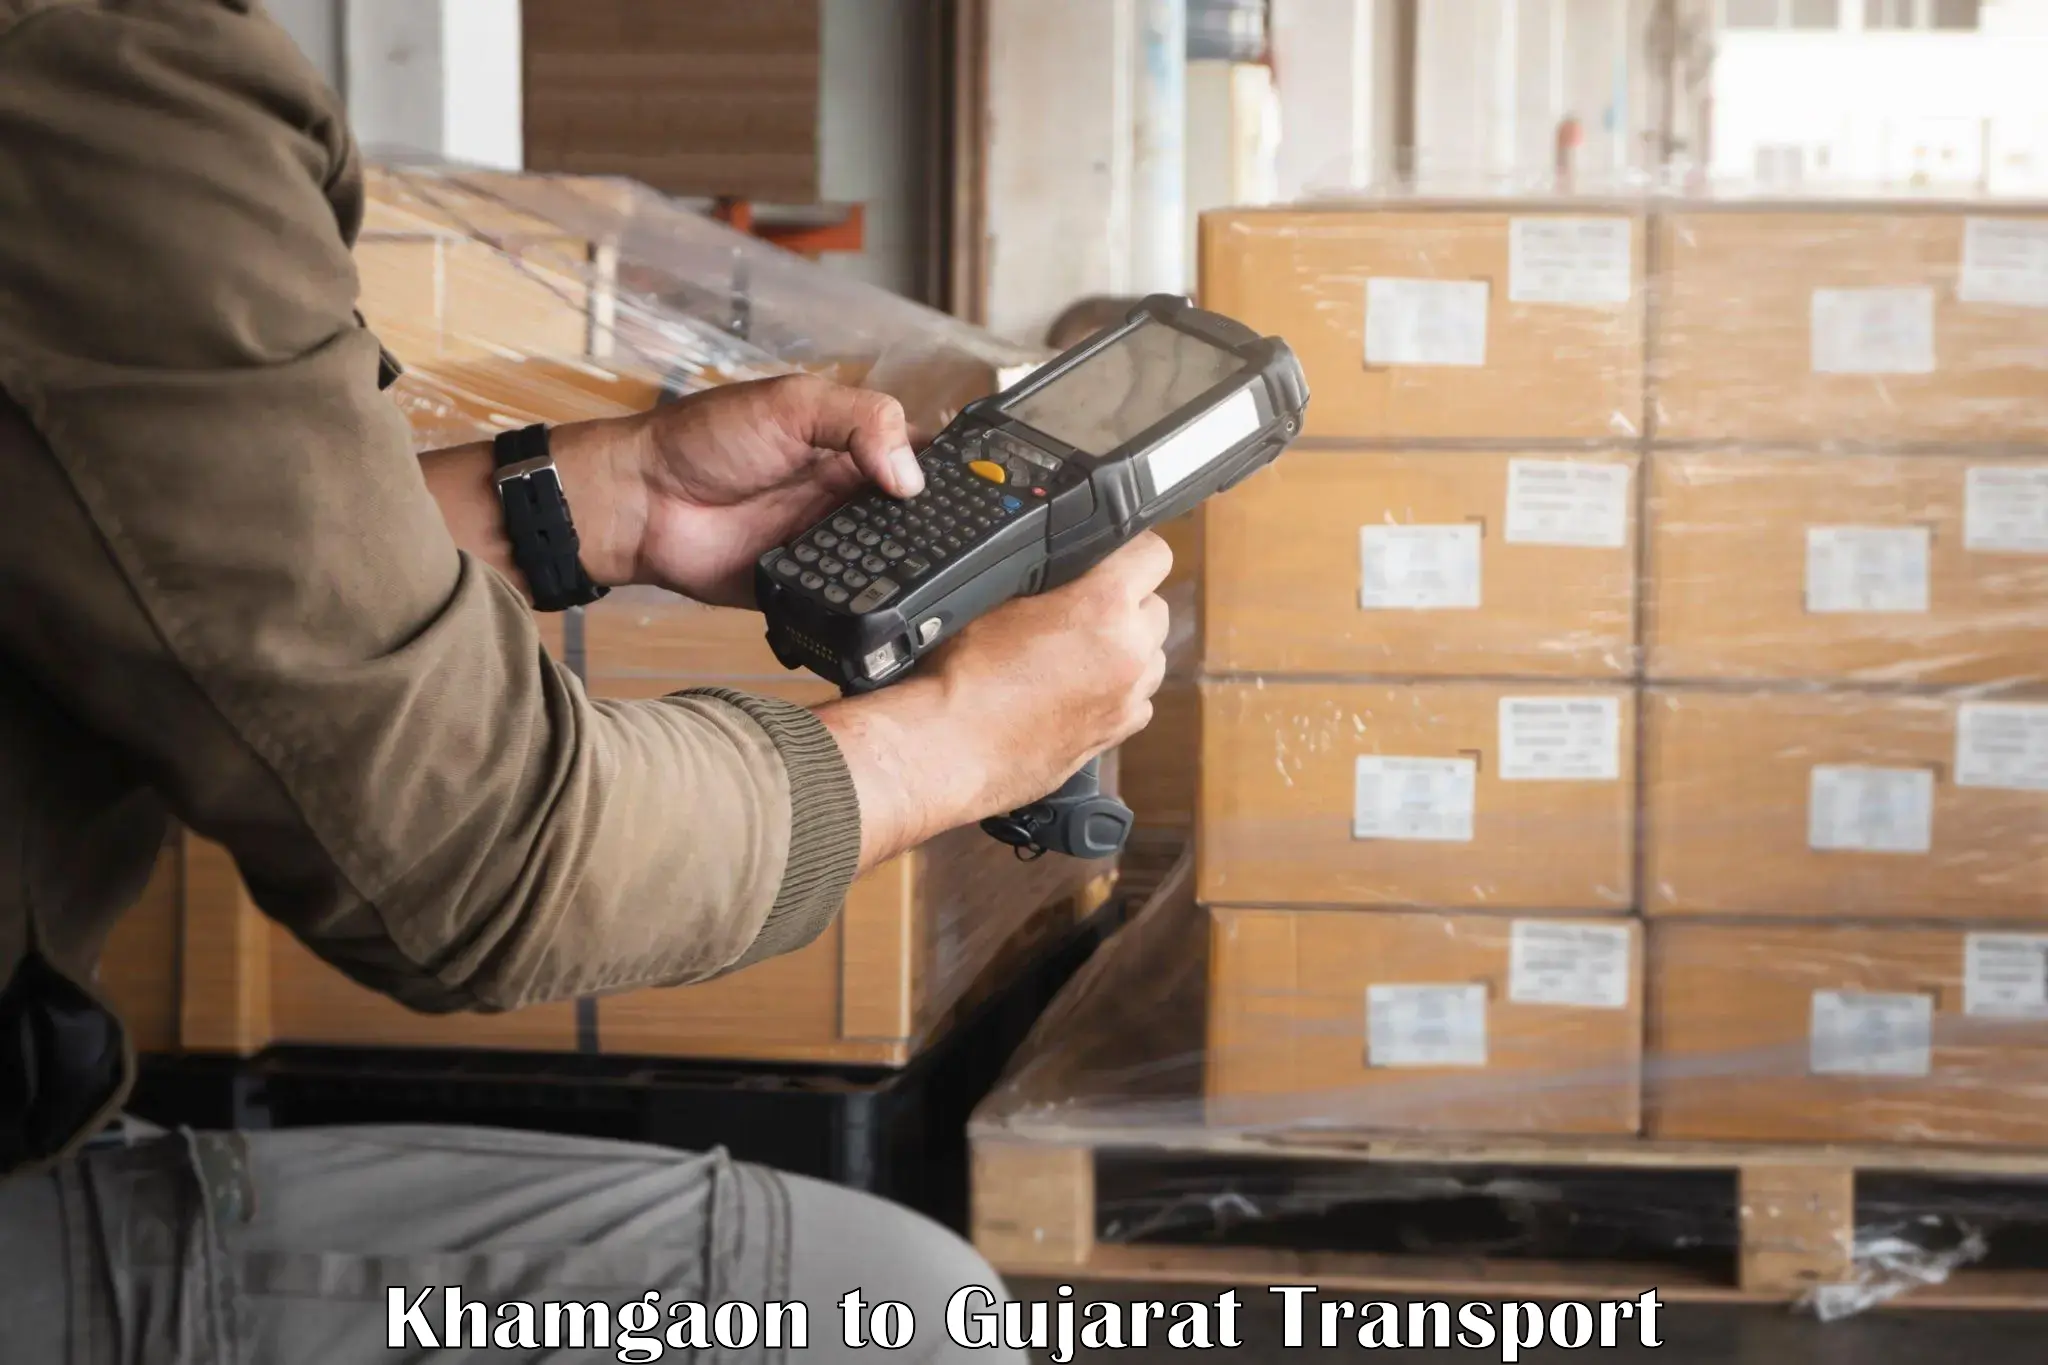 Furniture transport service Khamgaon to Veraval